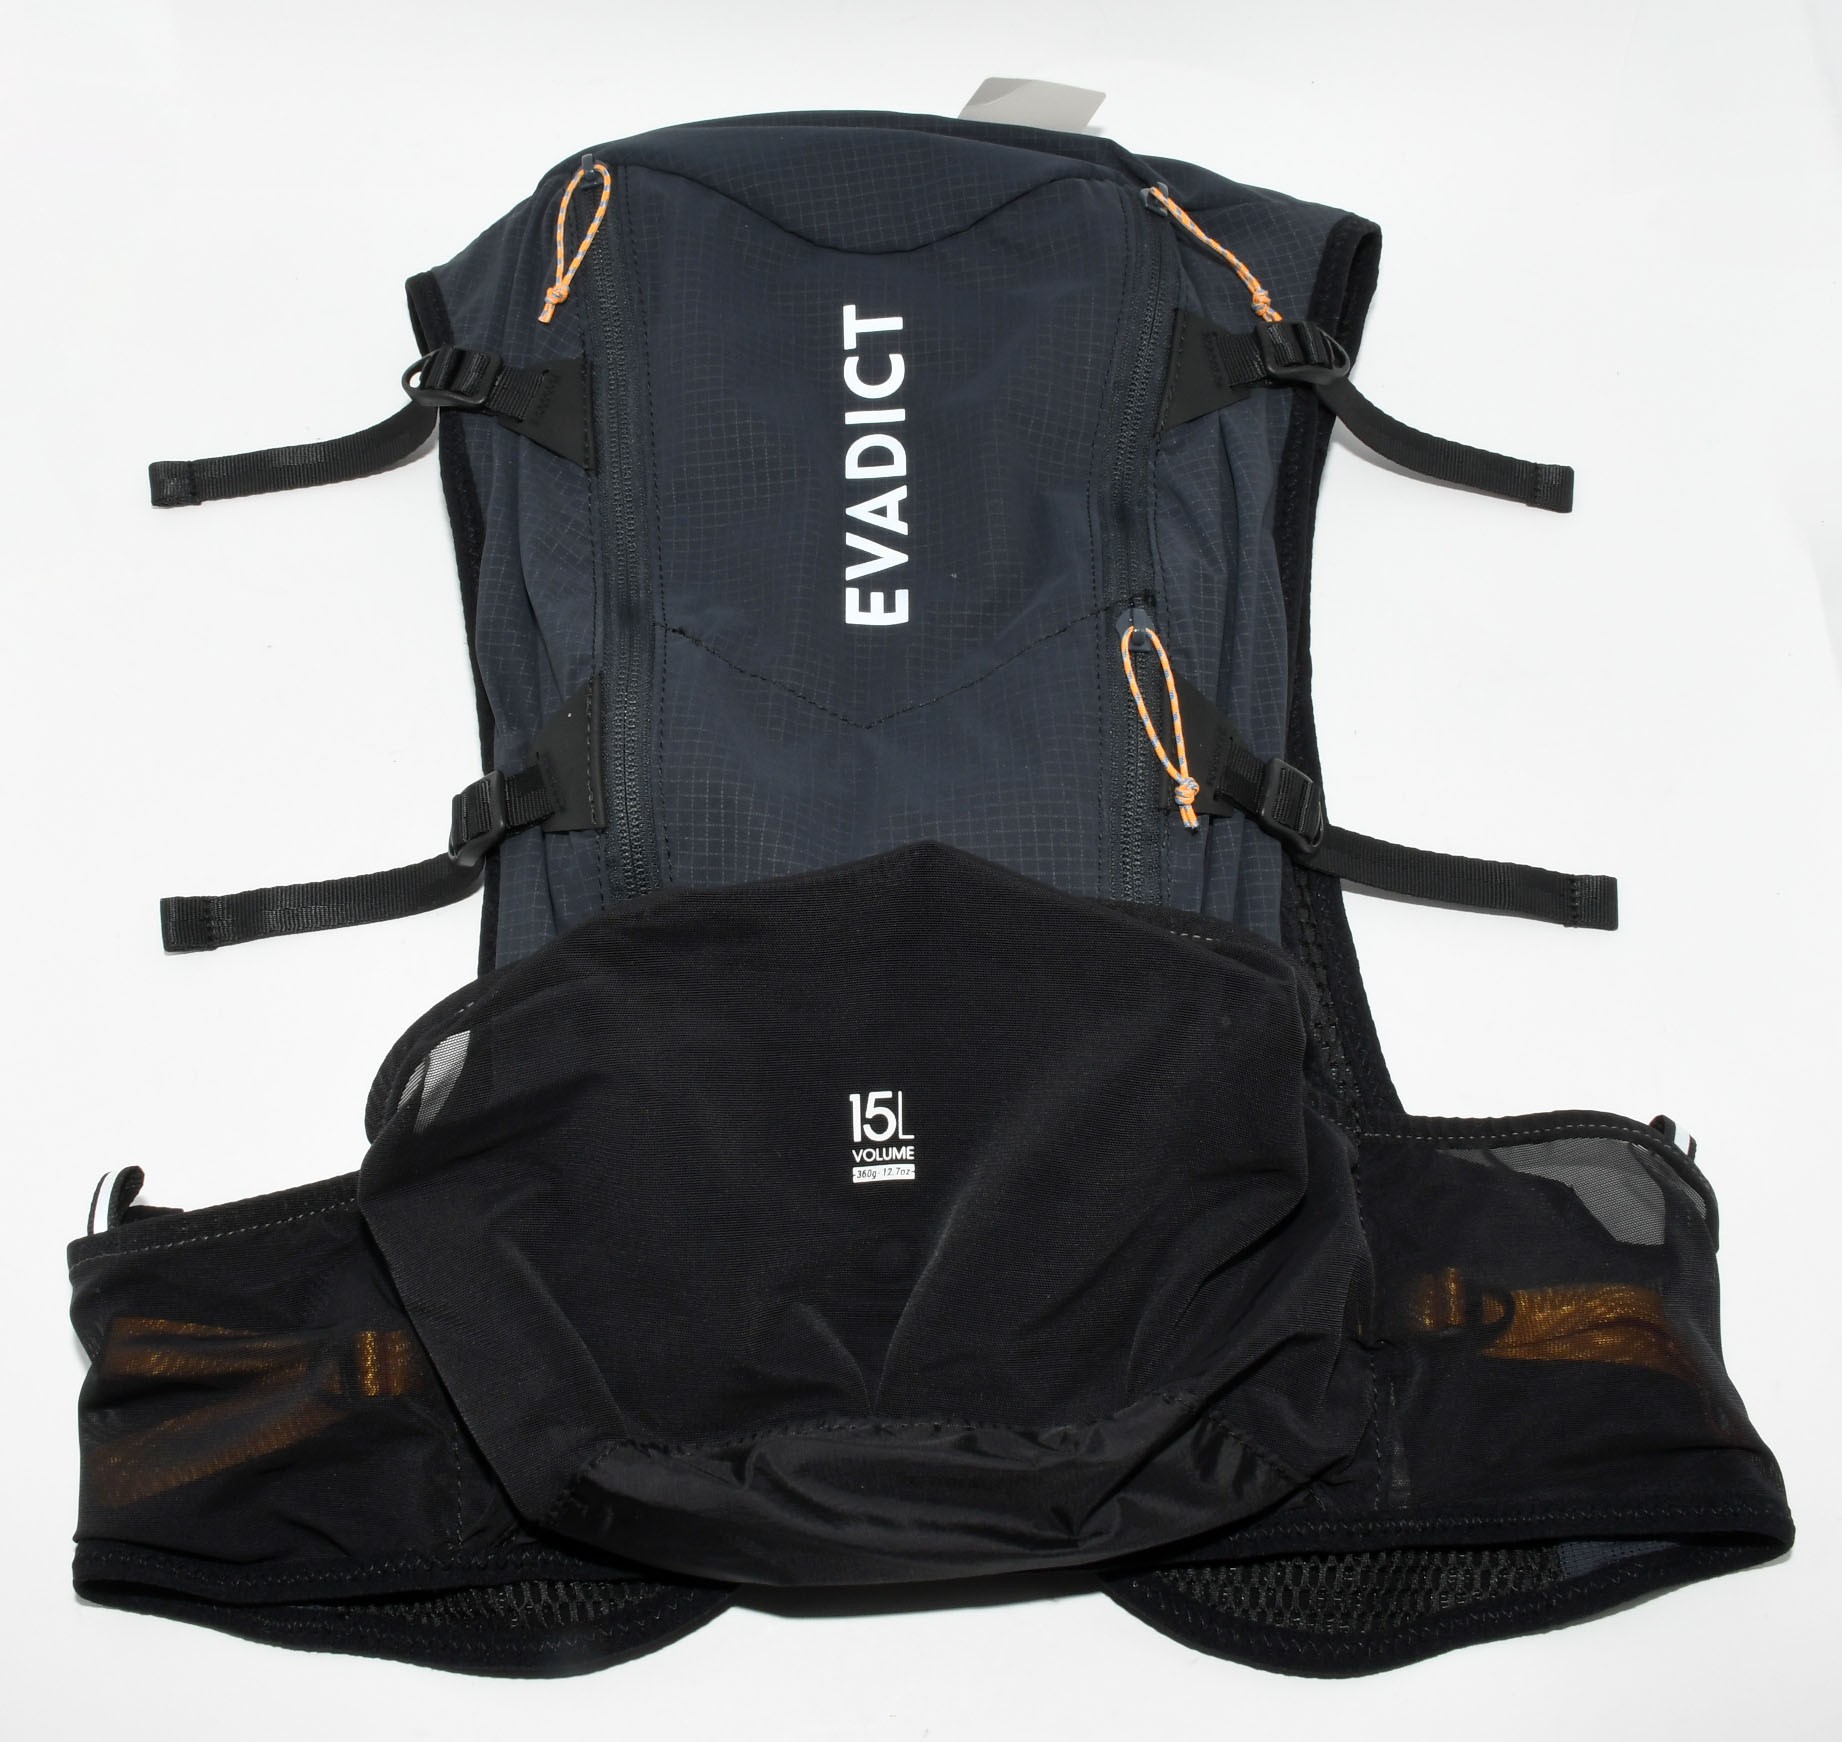 Si practicas running esta mochila de Decathlon te cambia la vida y cuesta  hoy menos de 30 euros